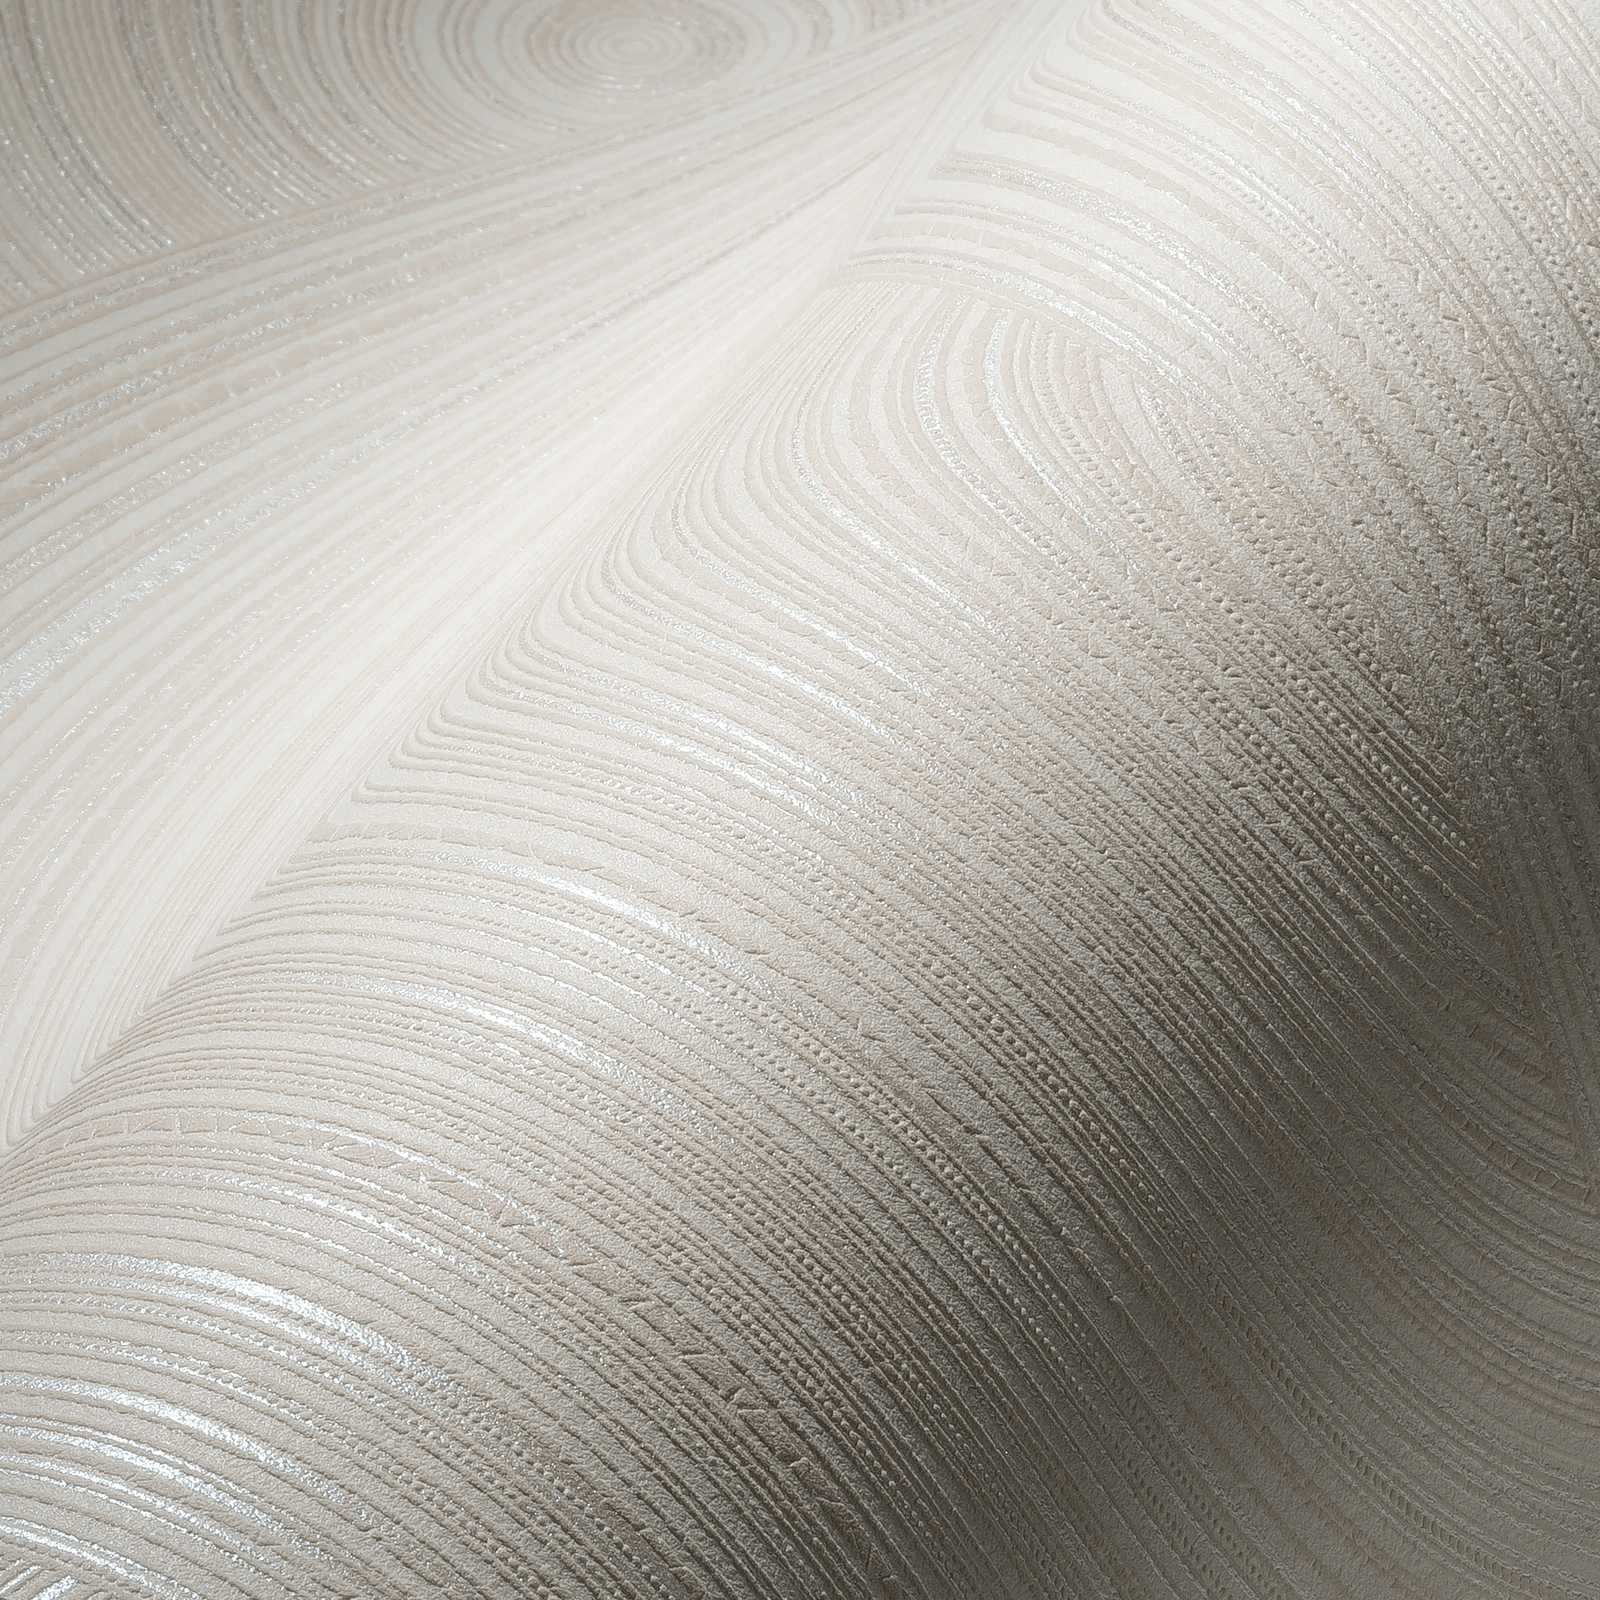             papel pintado no tejido con superficie texturizada - crema, beige
        